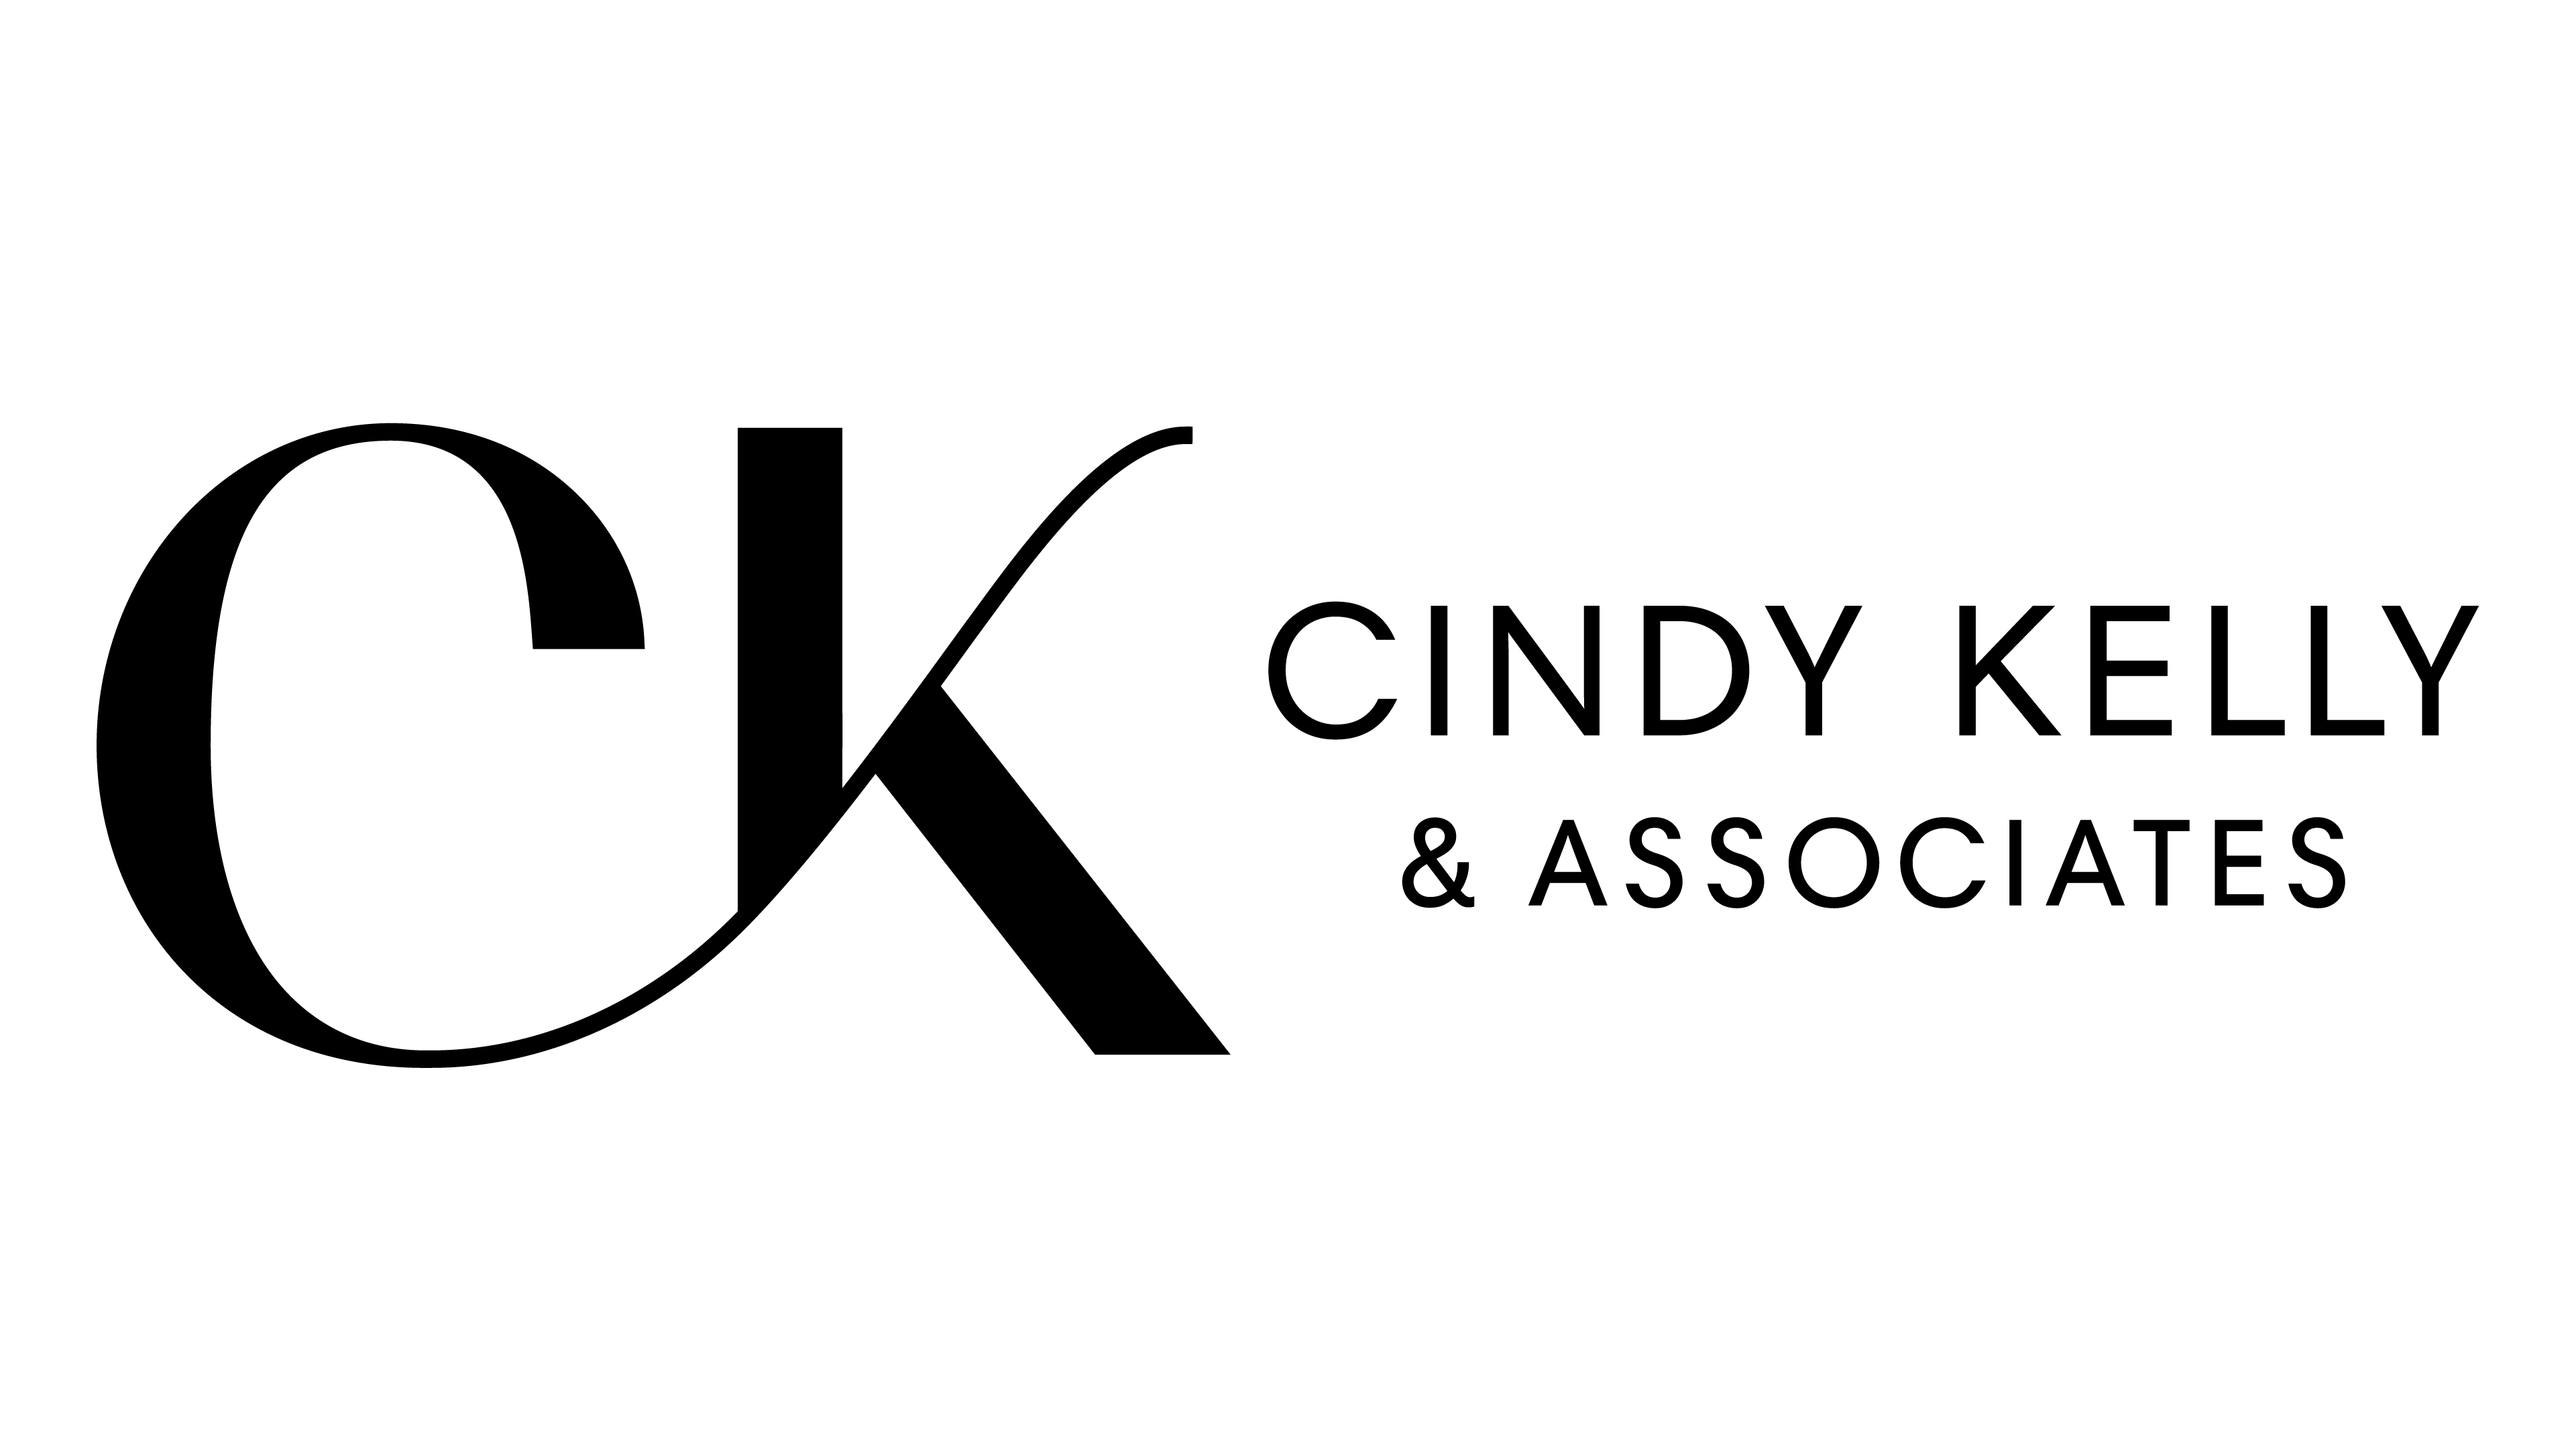 A text banner describing Cindy Kelly